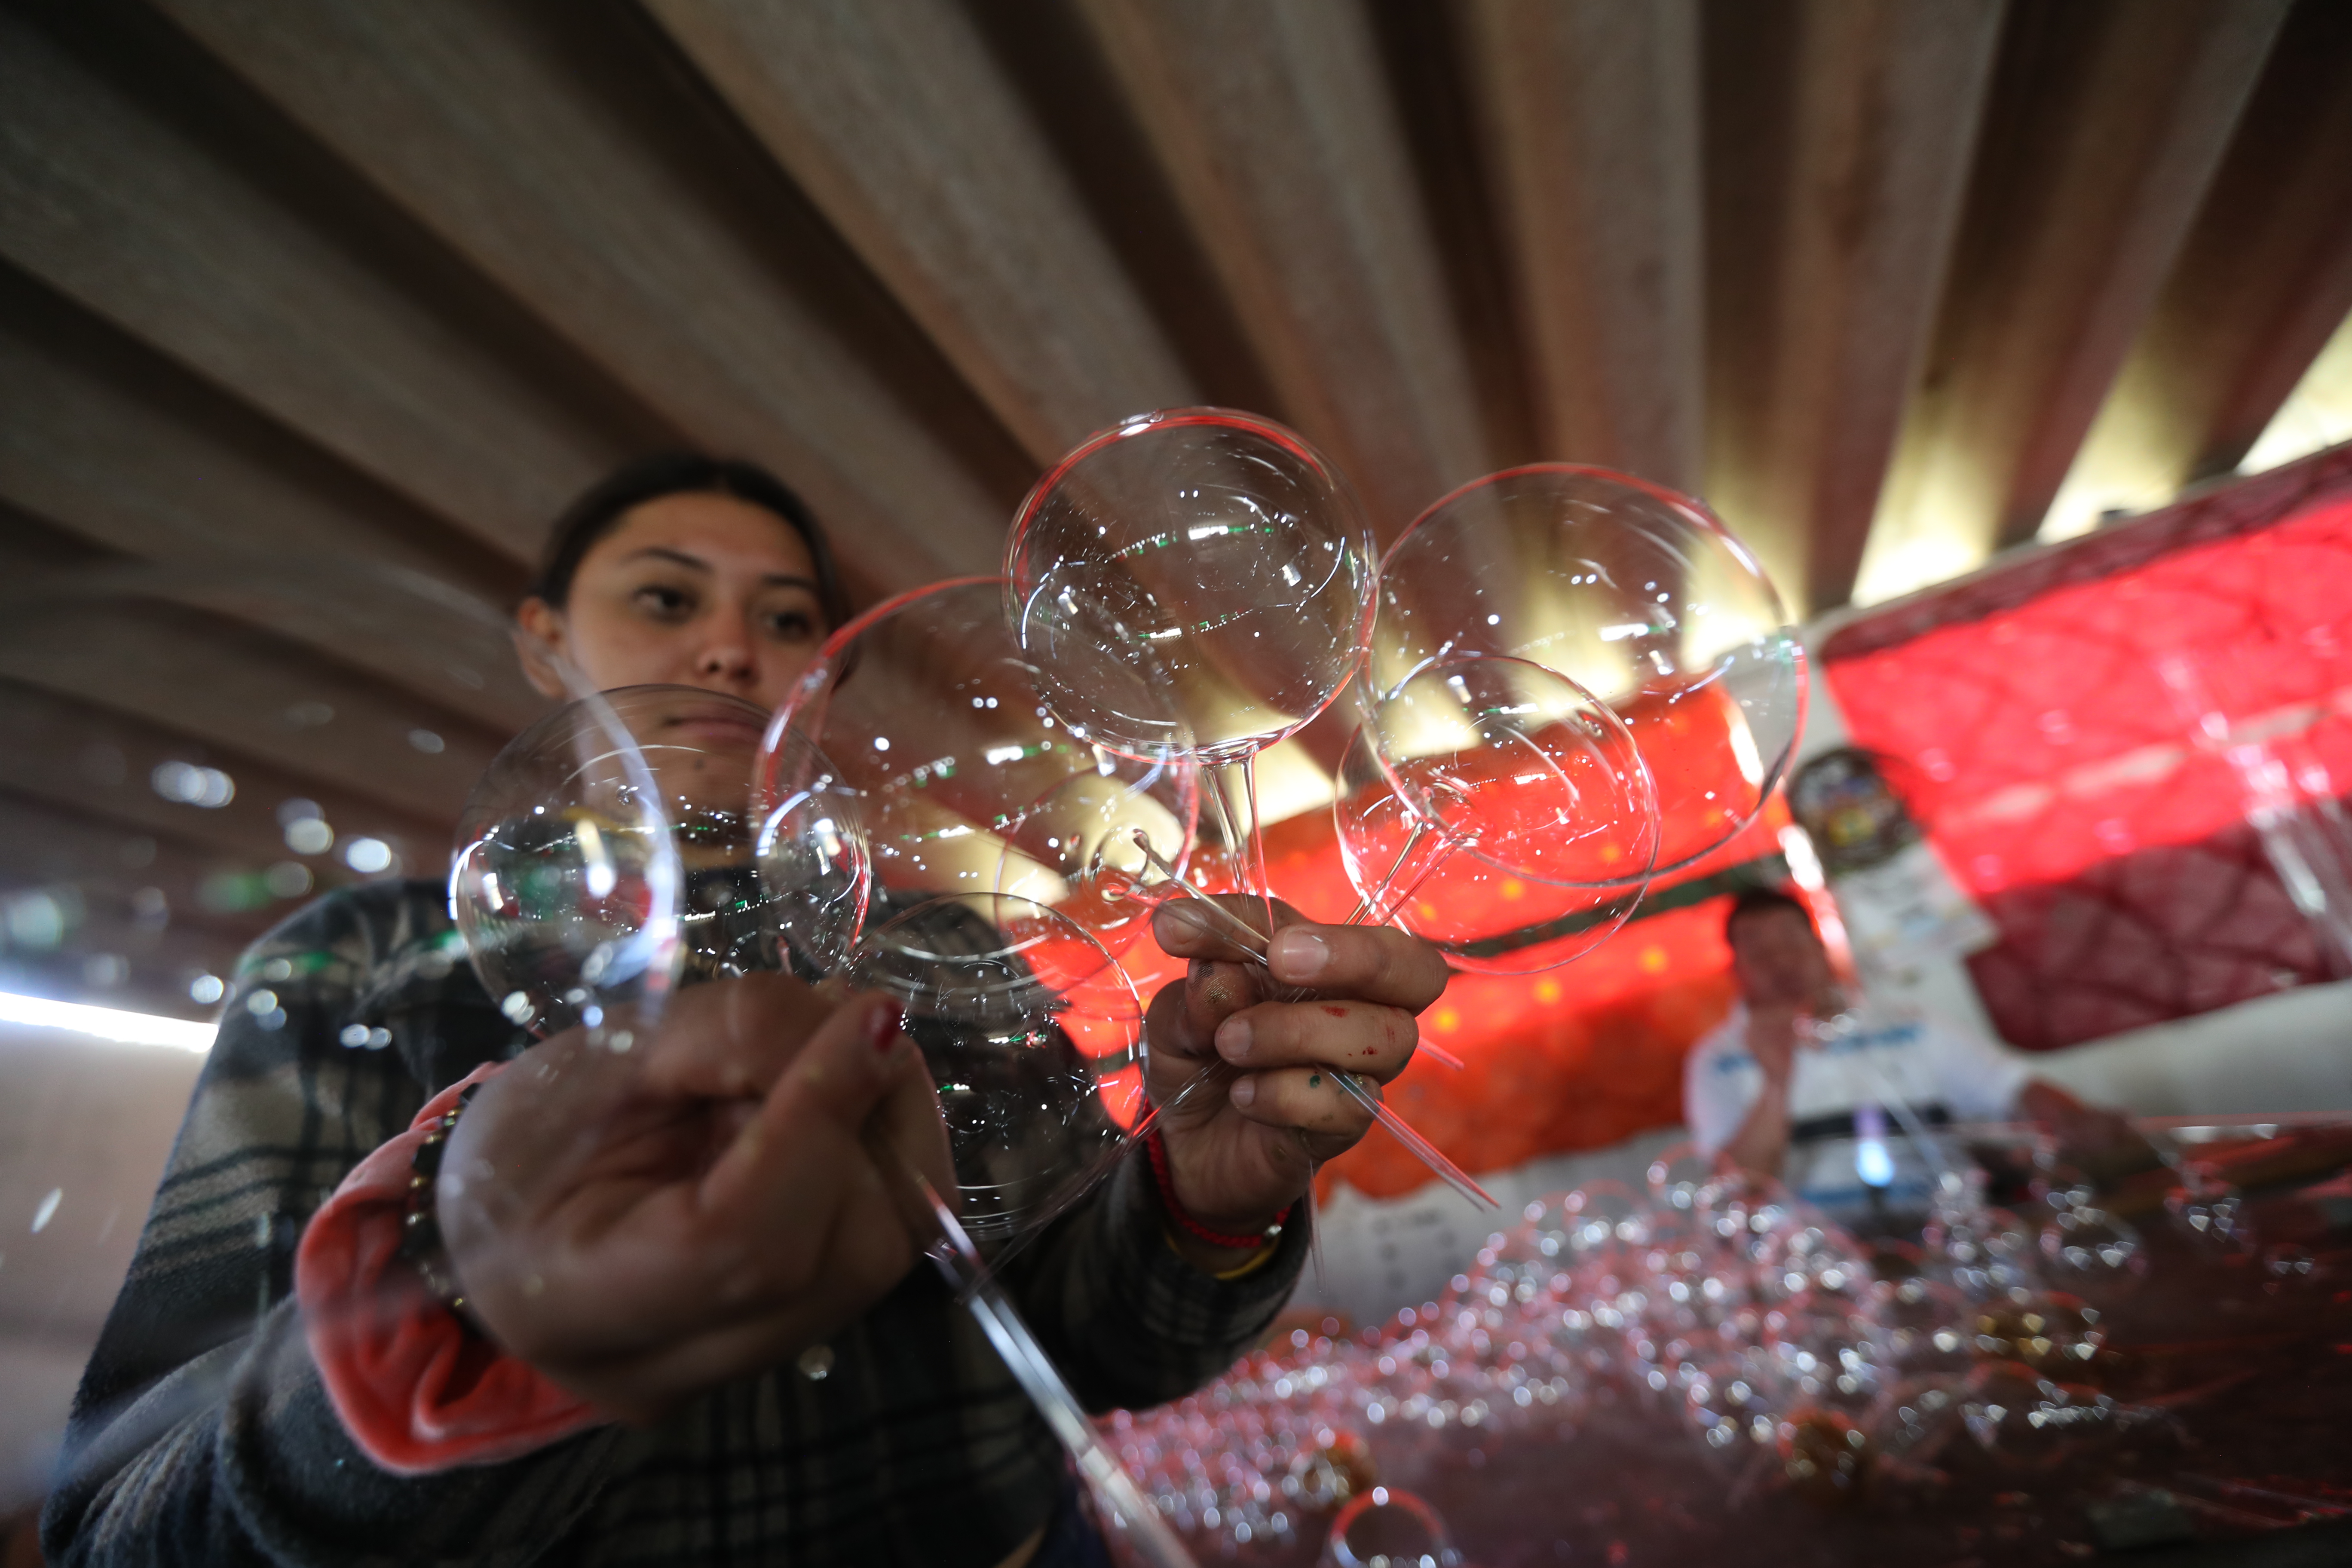 Esferas Tolontli: Artesanía en Vidrio Soplado que Ilumina la Navidad